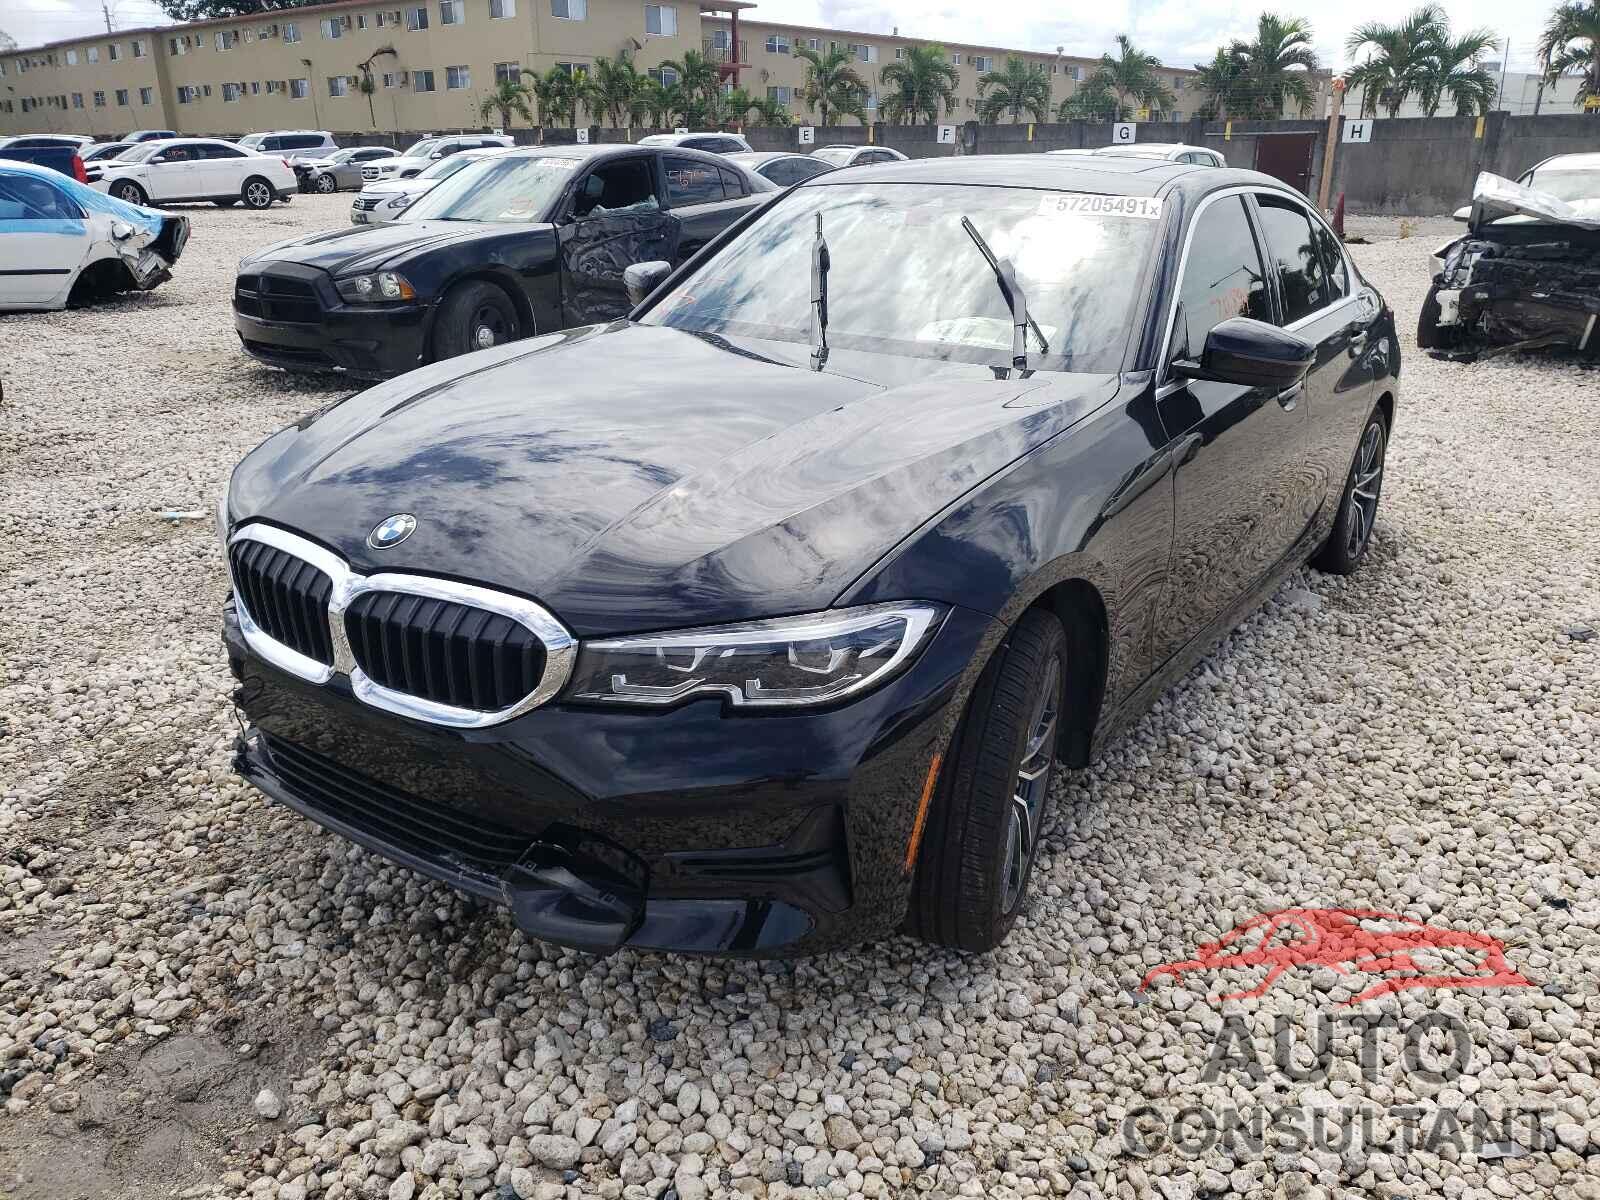 BMW 3 SERIES 2020 - 3MW5R1J06L8B19839